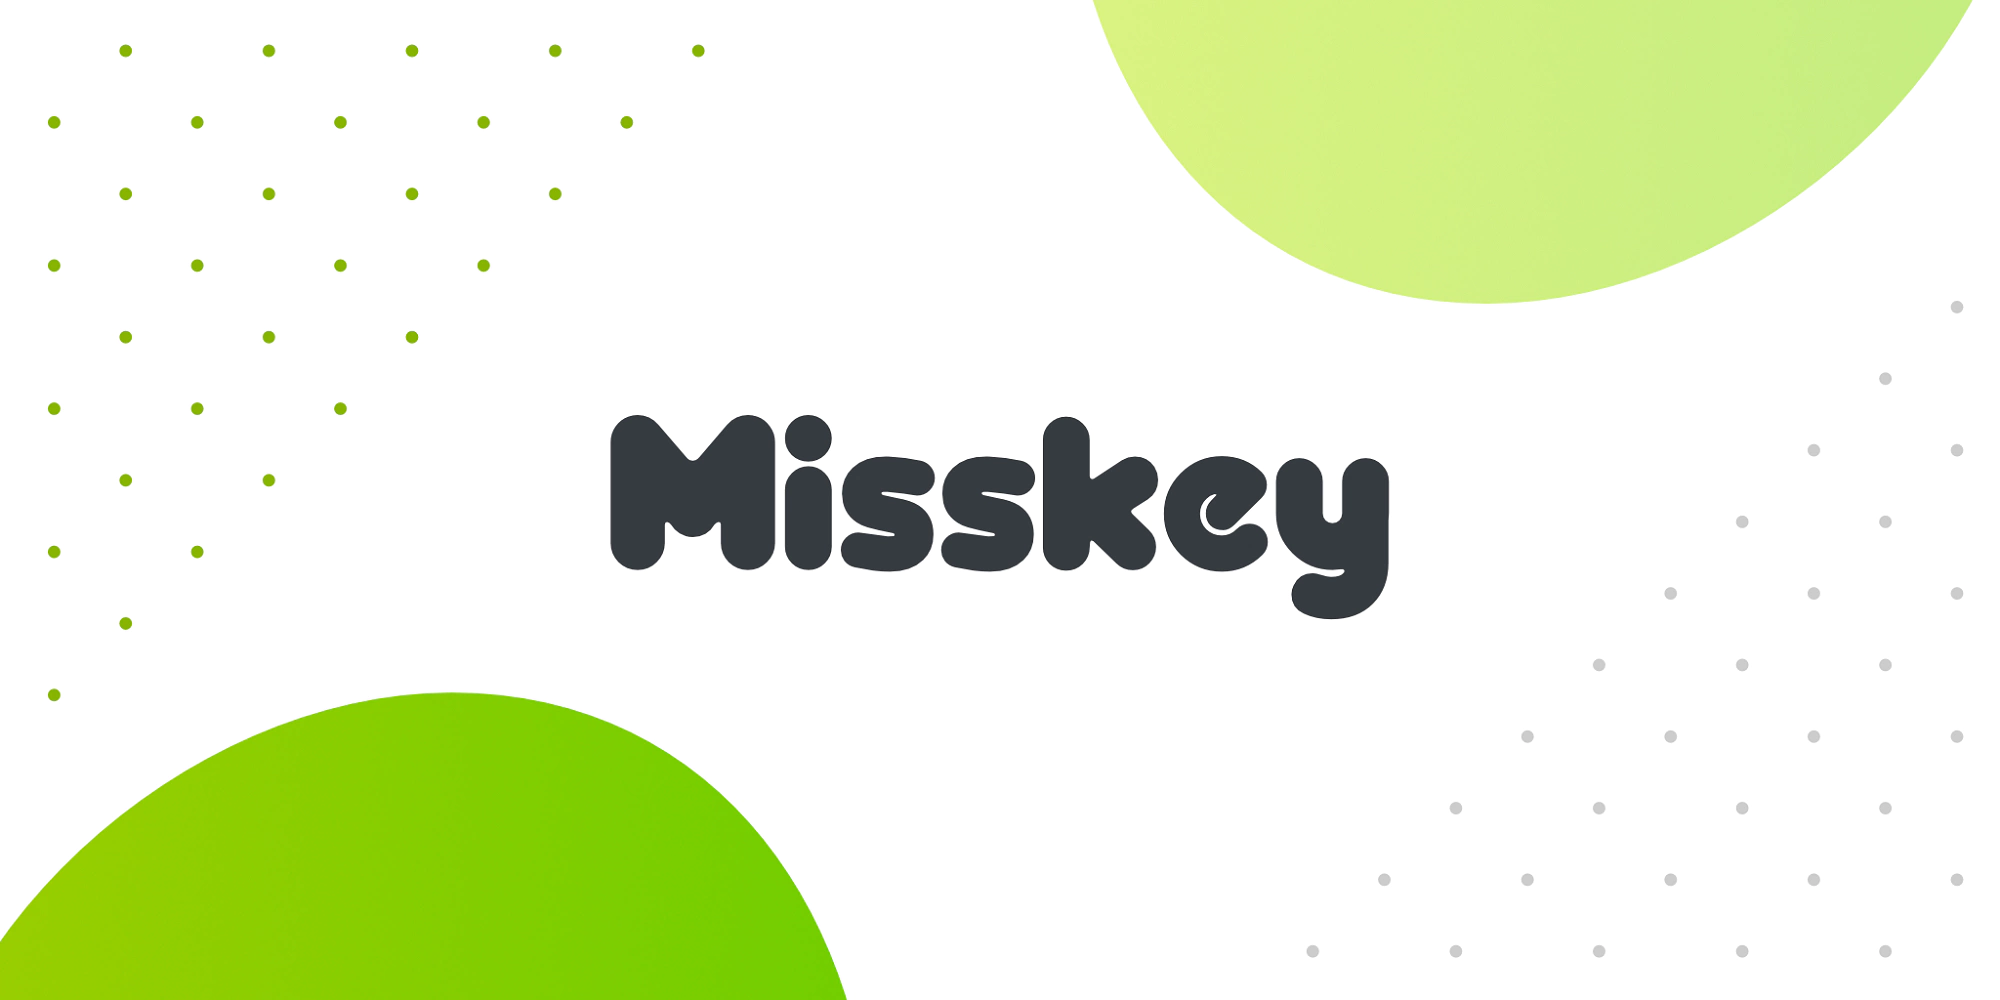 【备忘】misskey2telegram 集合信息流到聊天